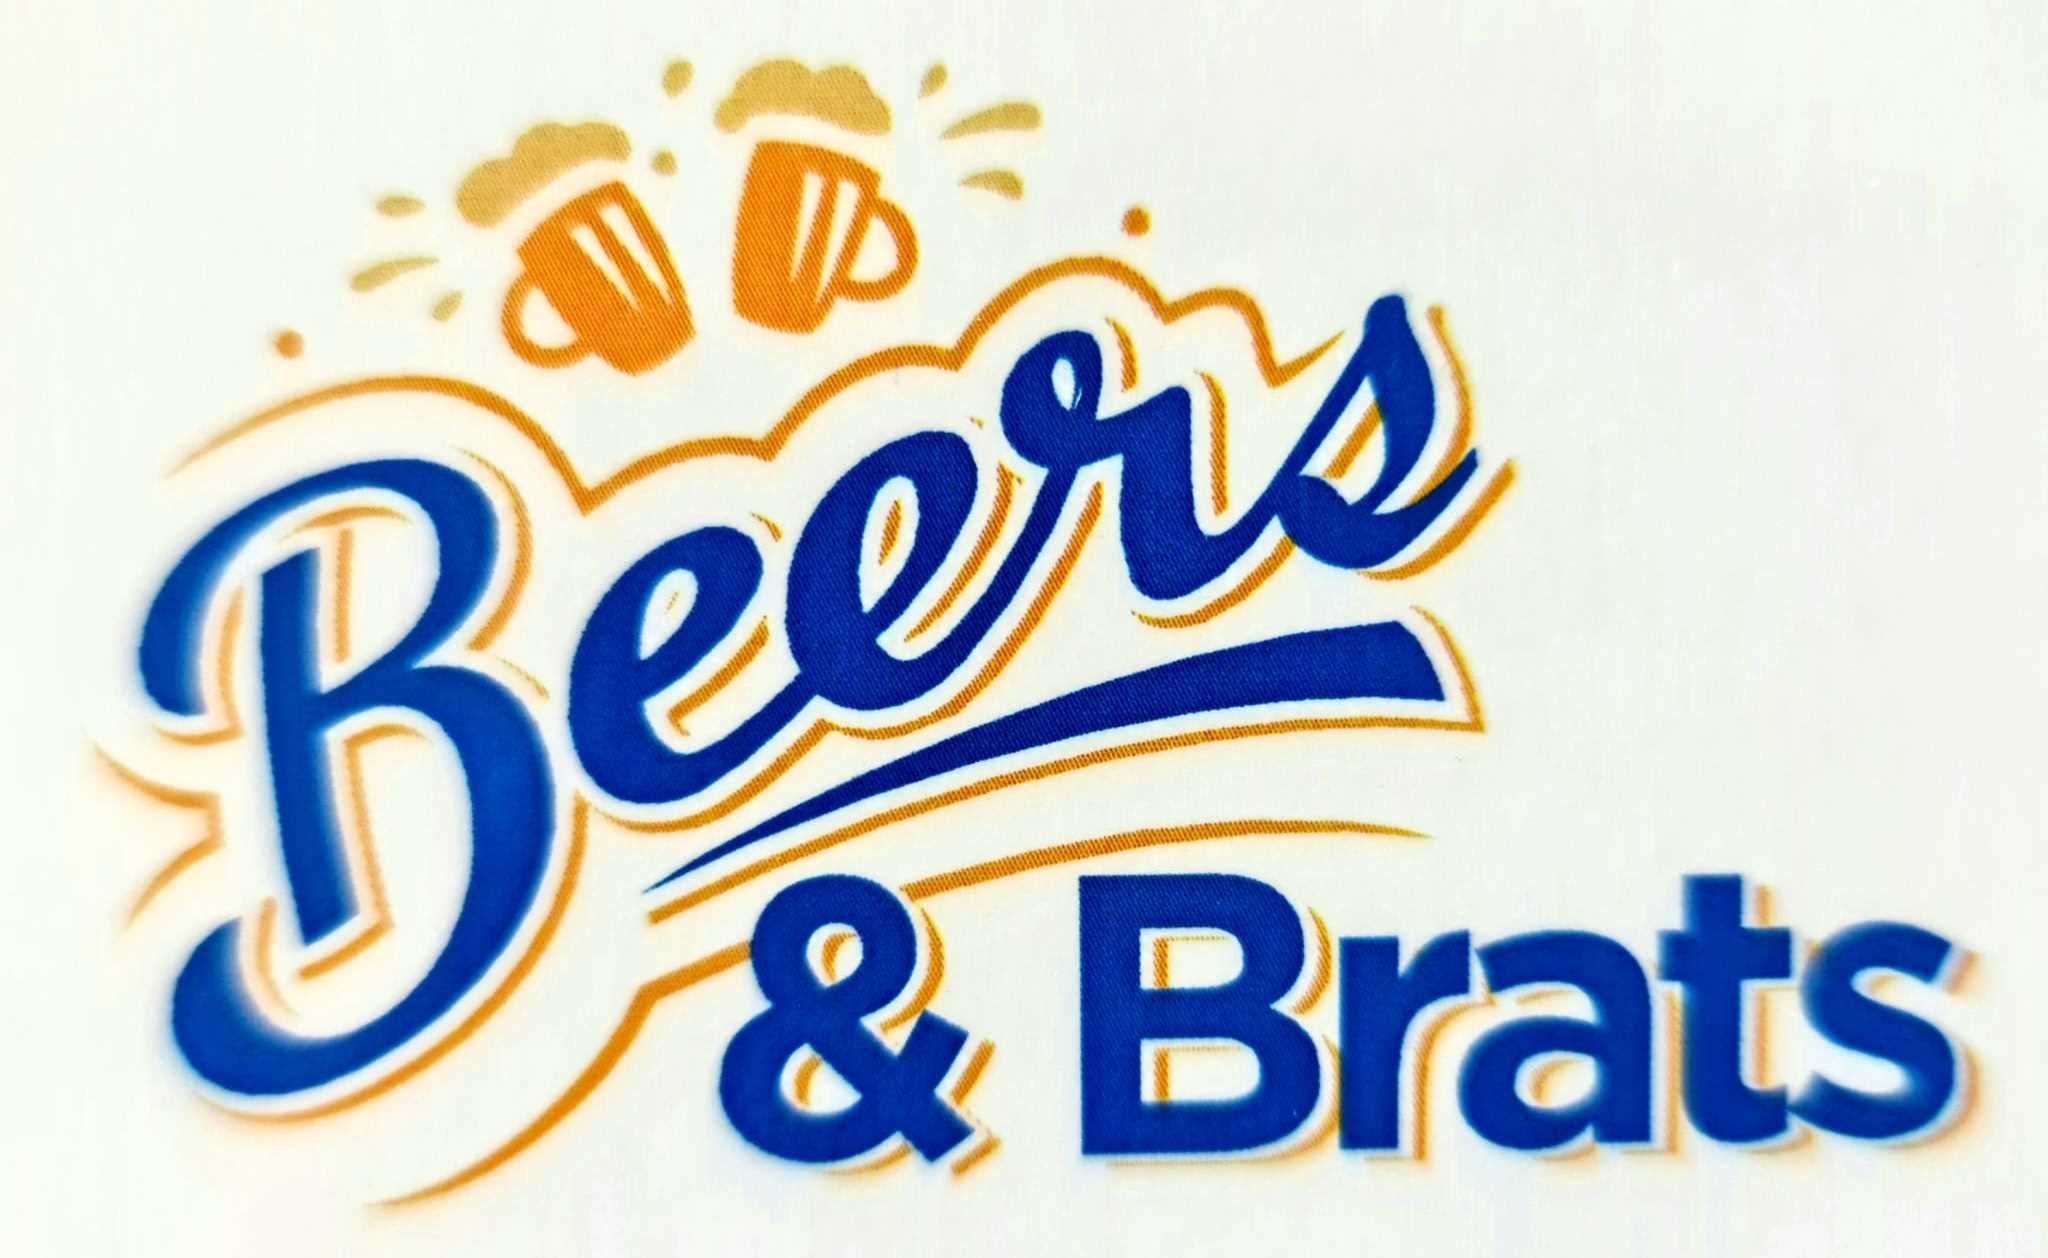 Beers & Brats